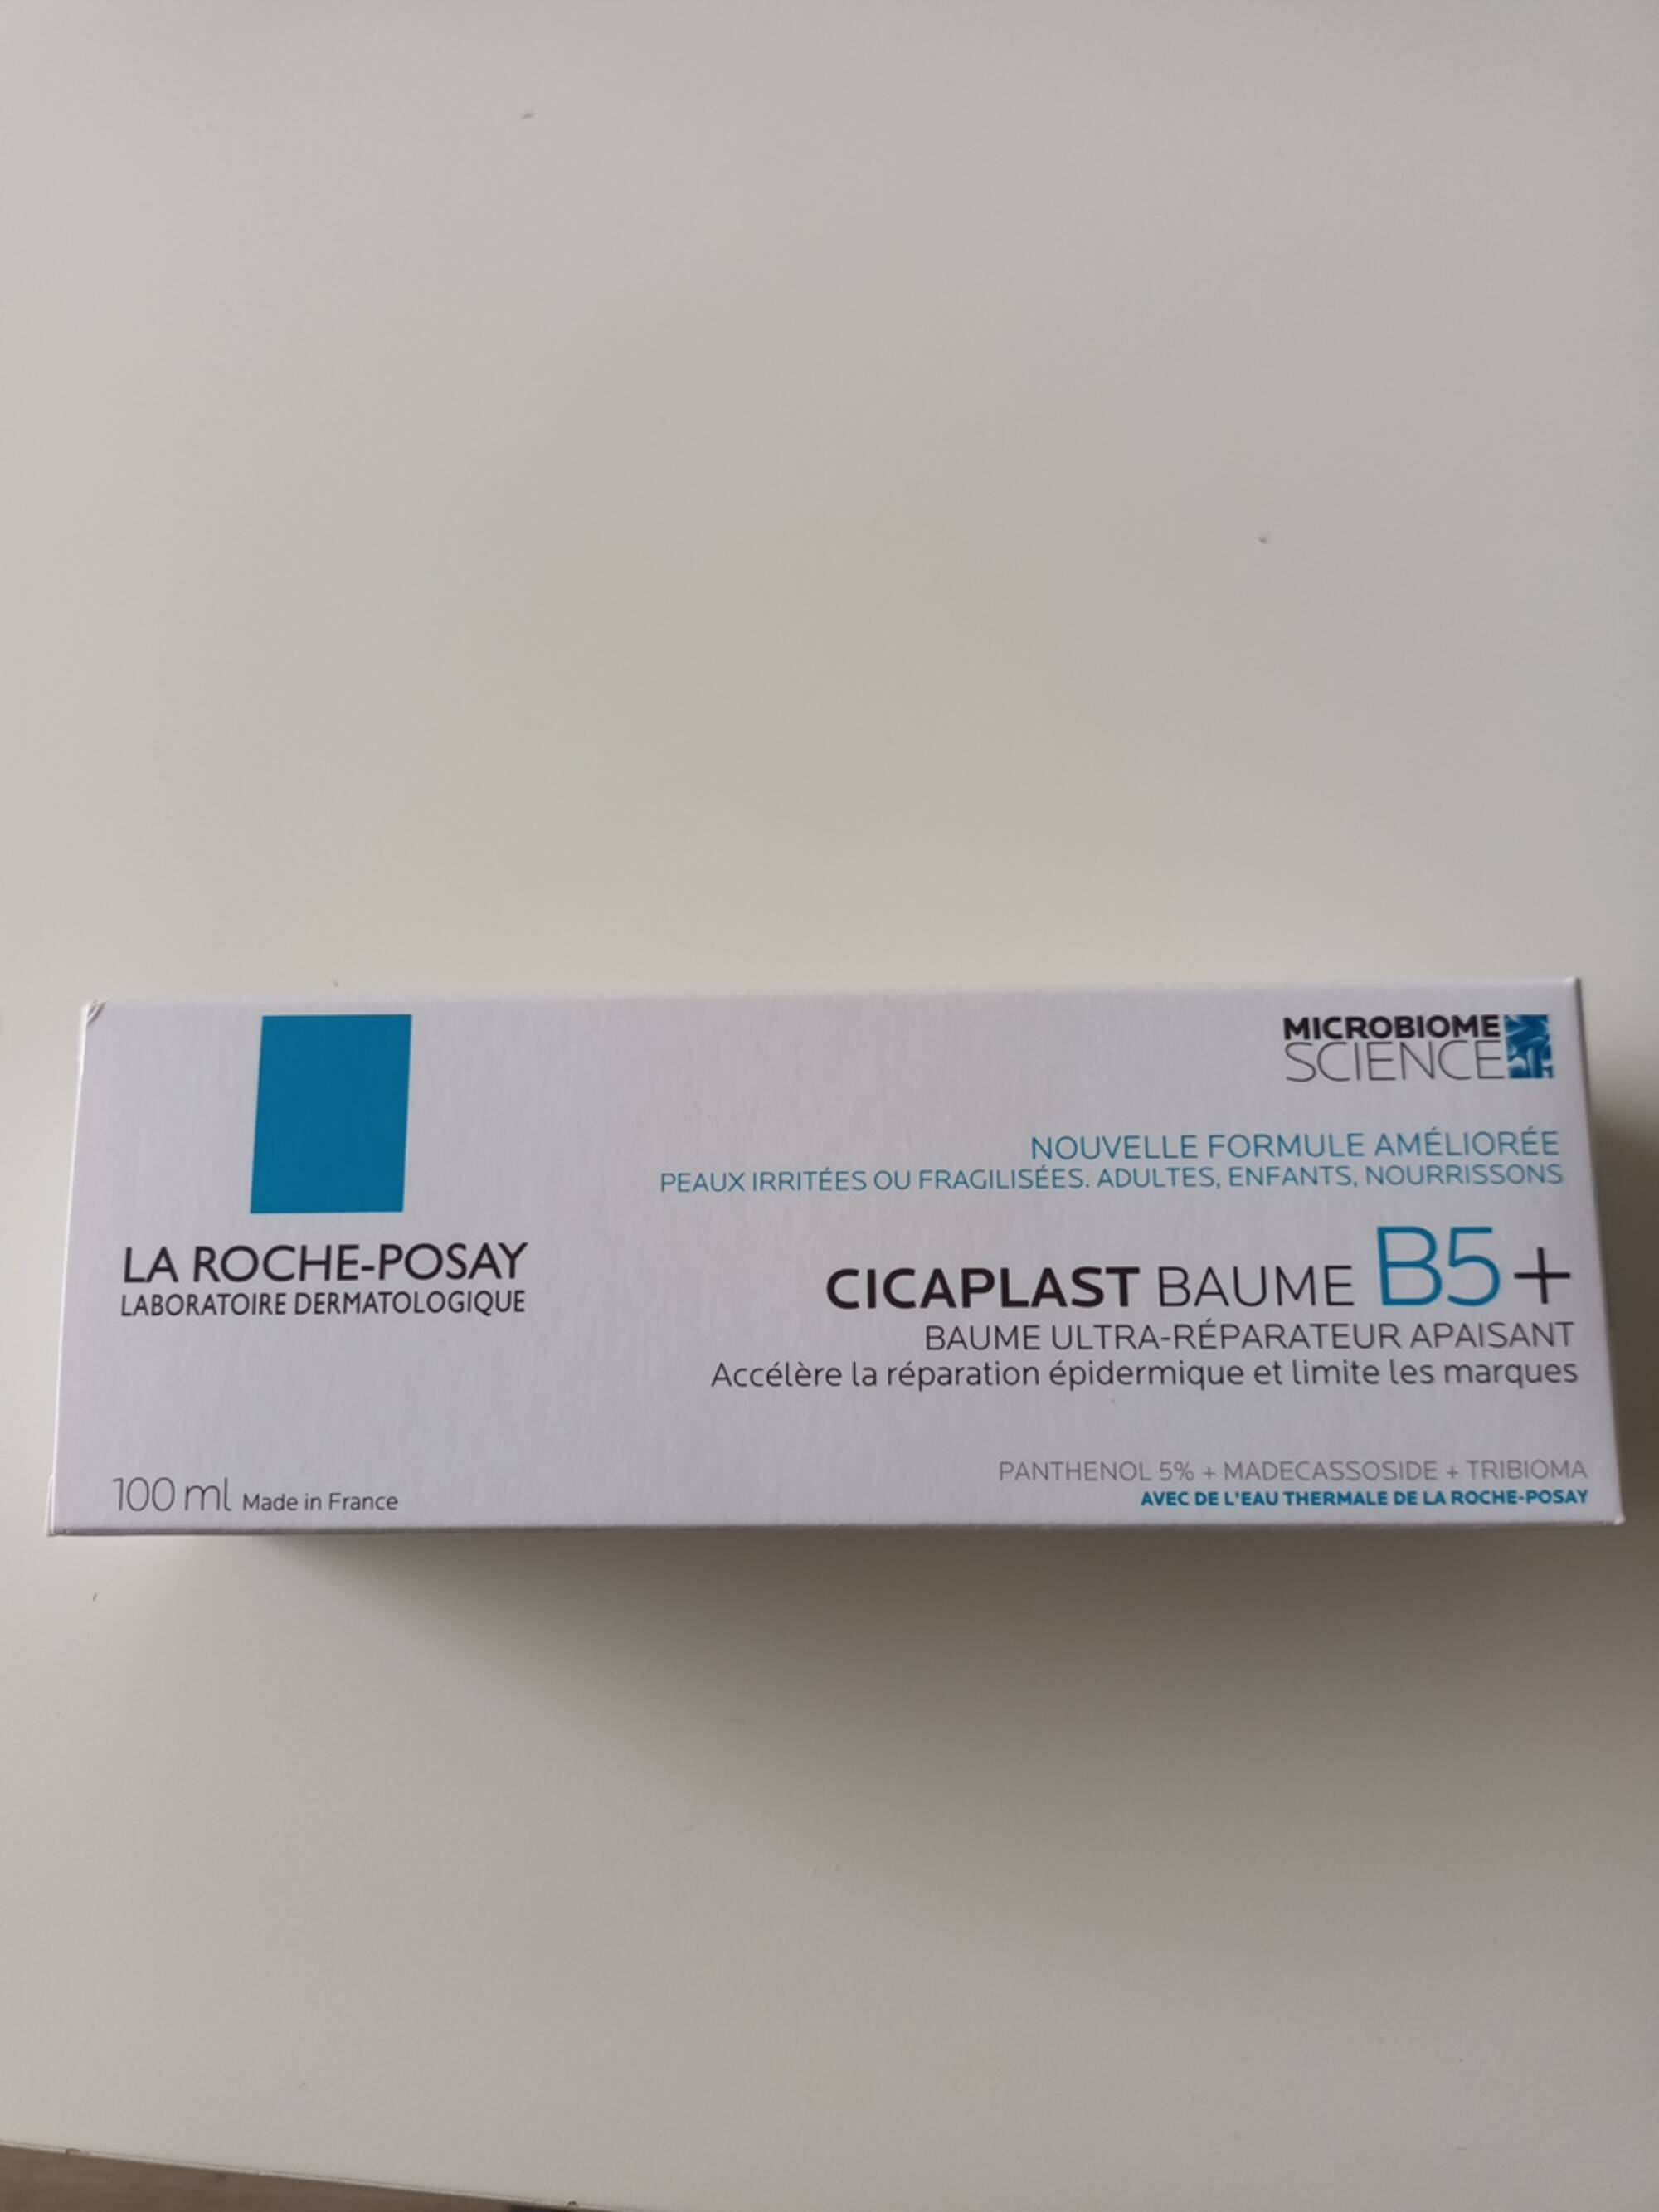 LA ROCHE-POSAY - Cicaplast - Baume B5+ ultra-réparateur apaisant